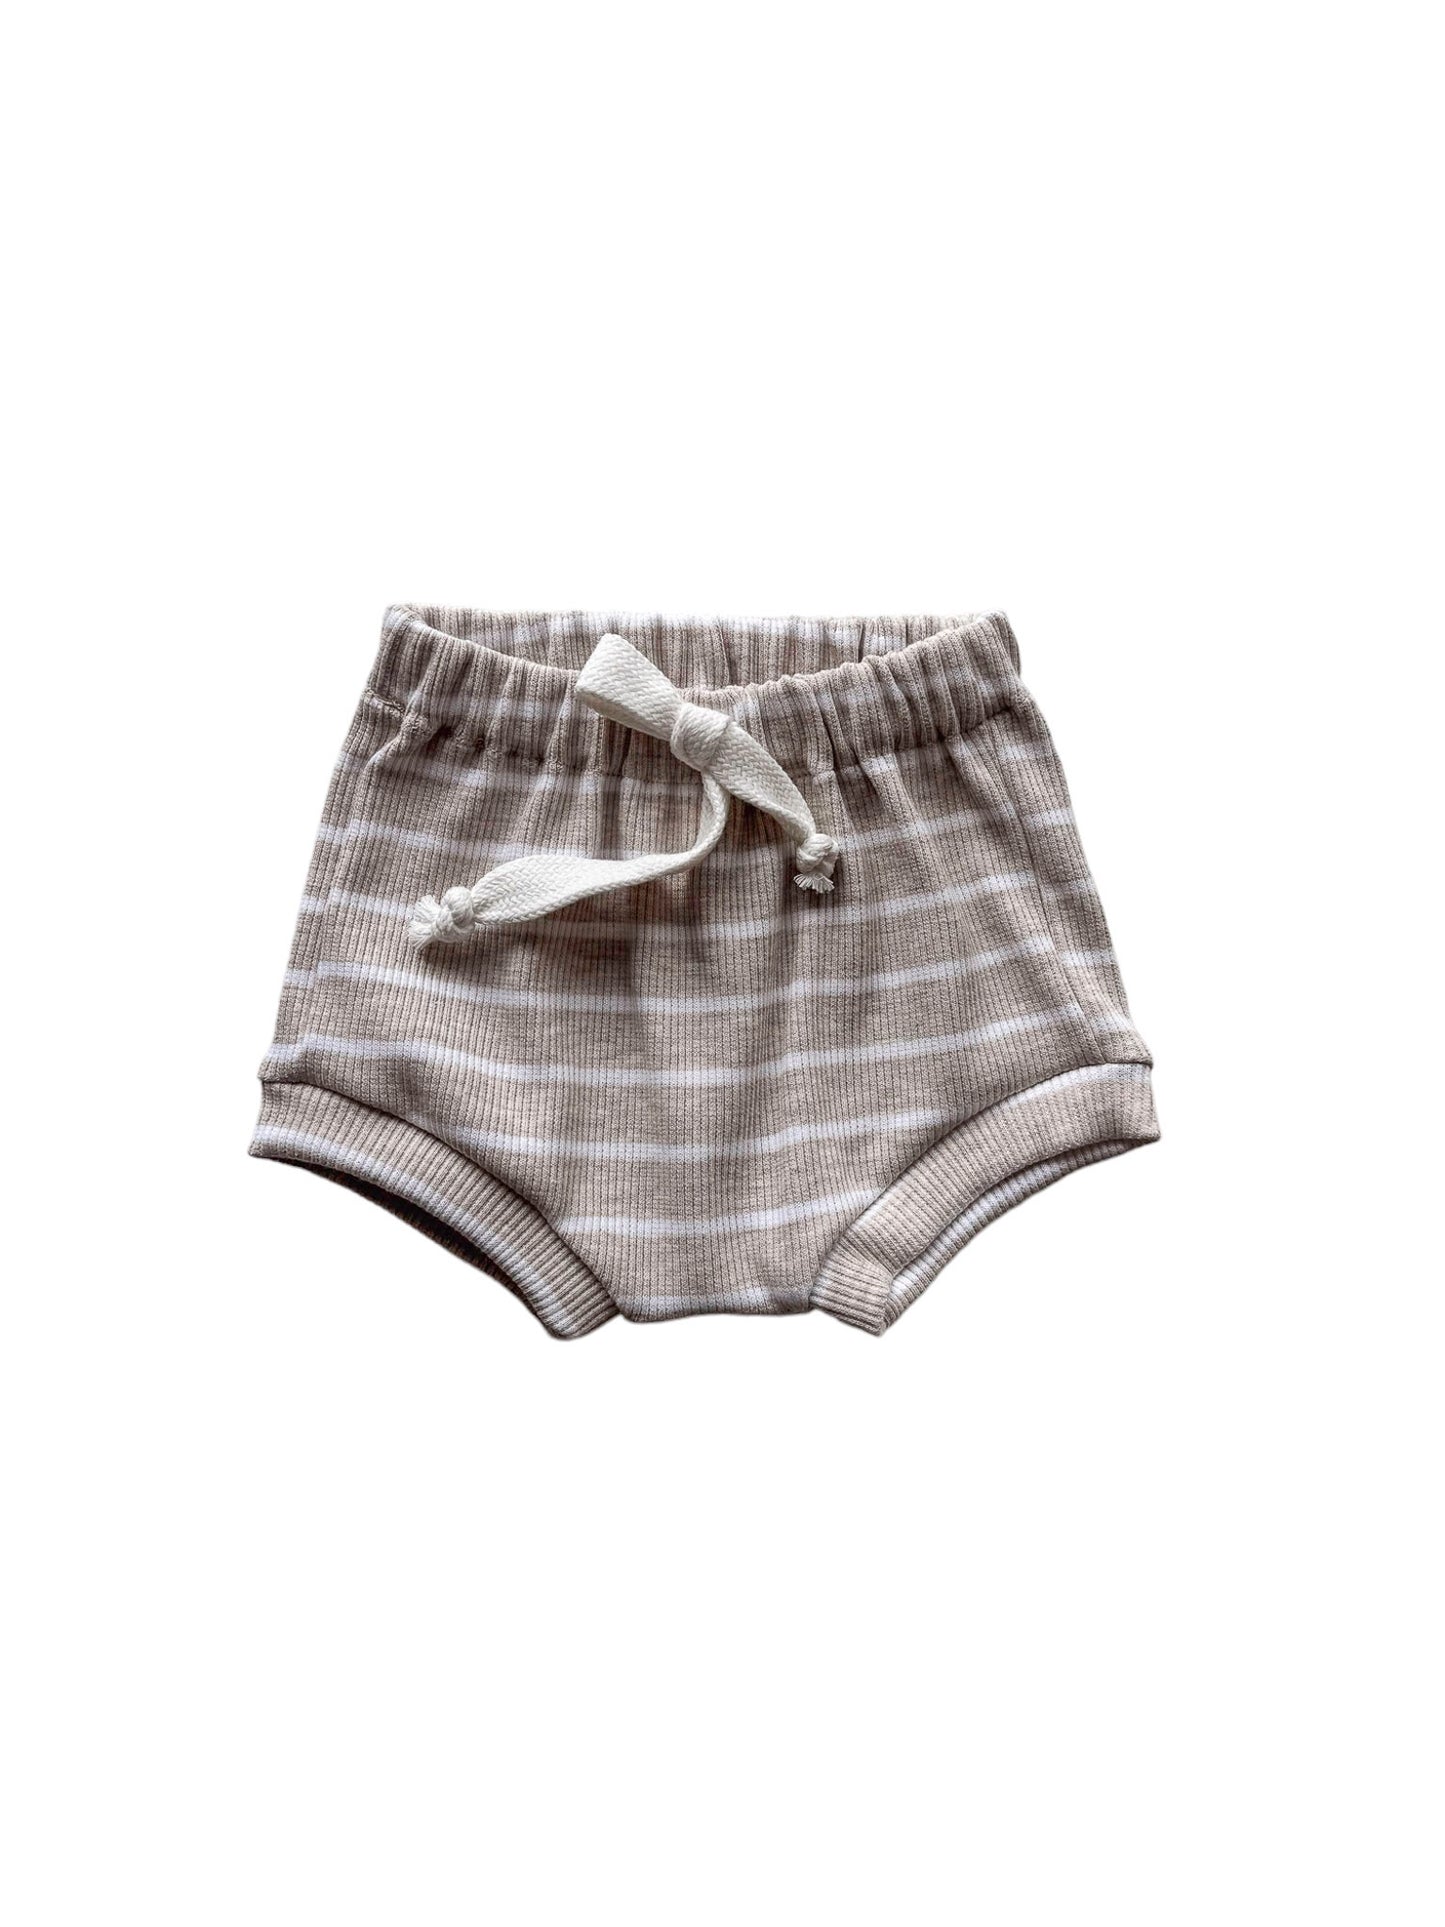 Baby boy shorts / stripes